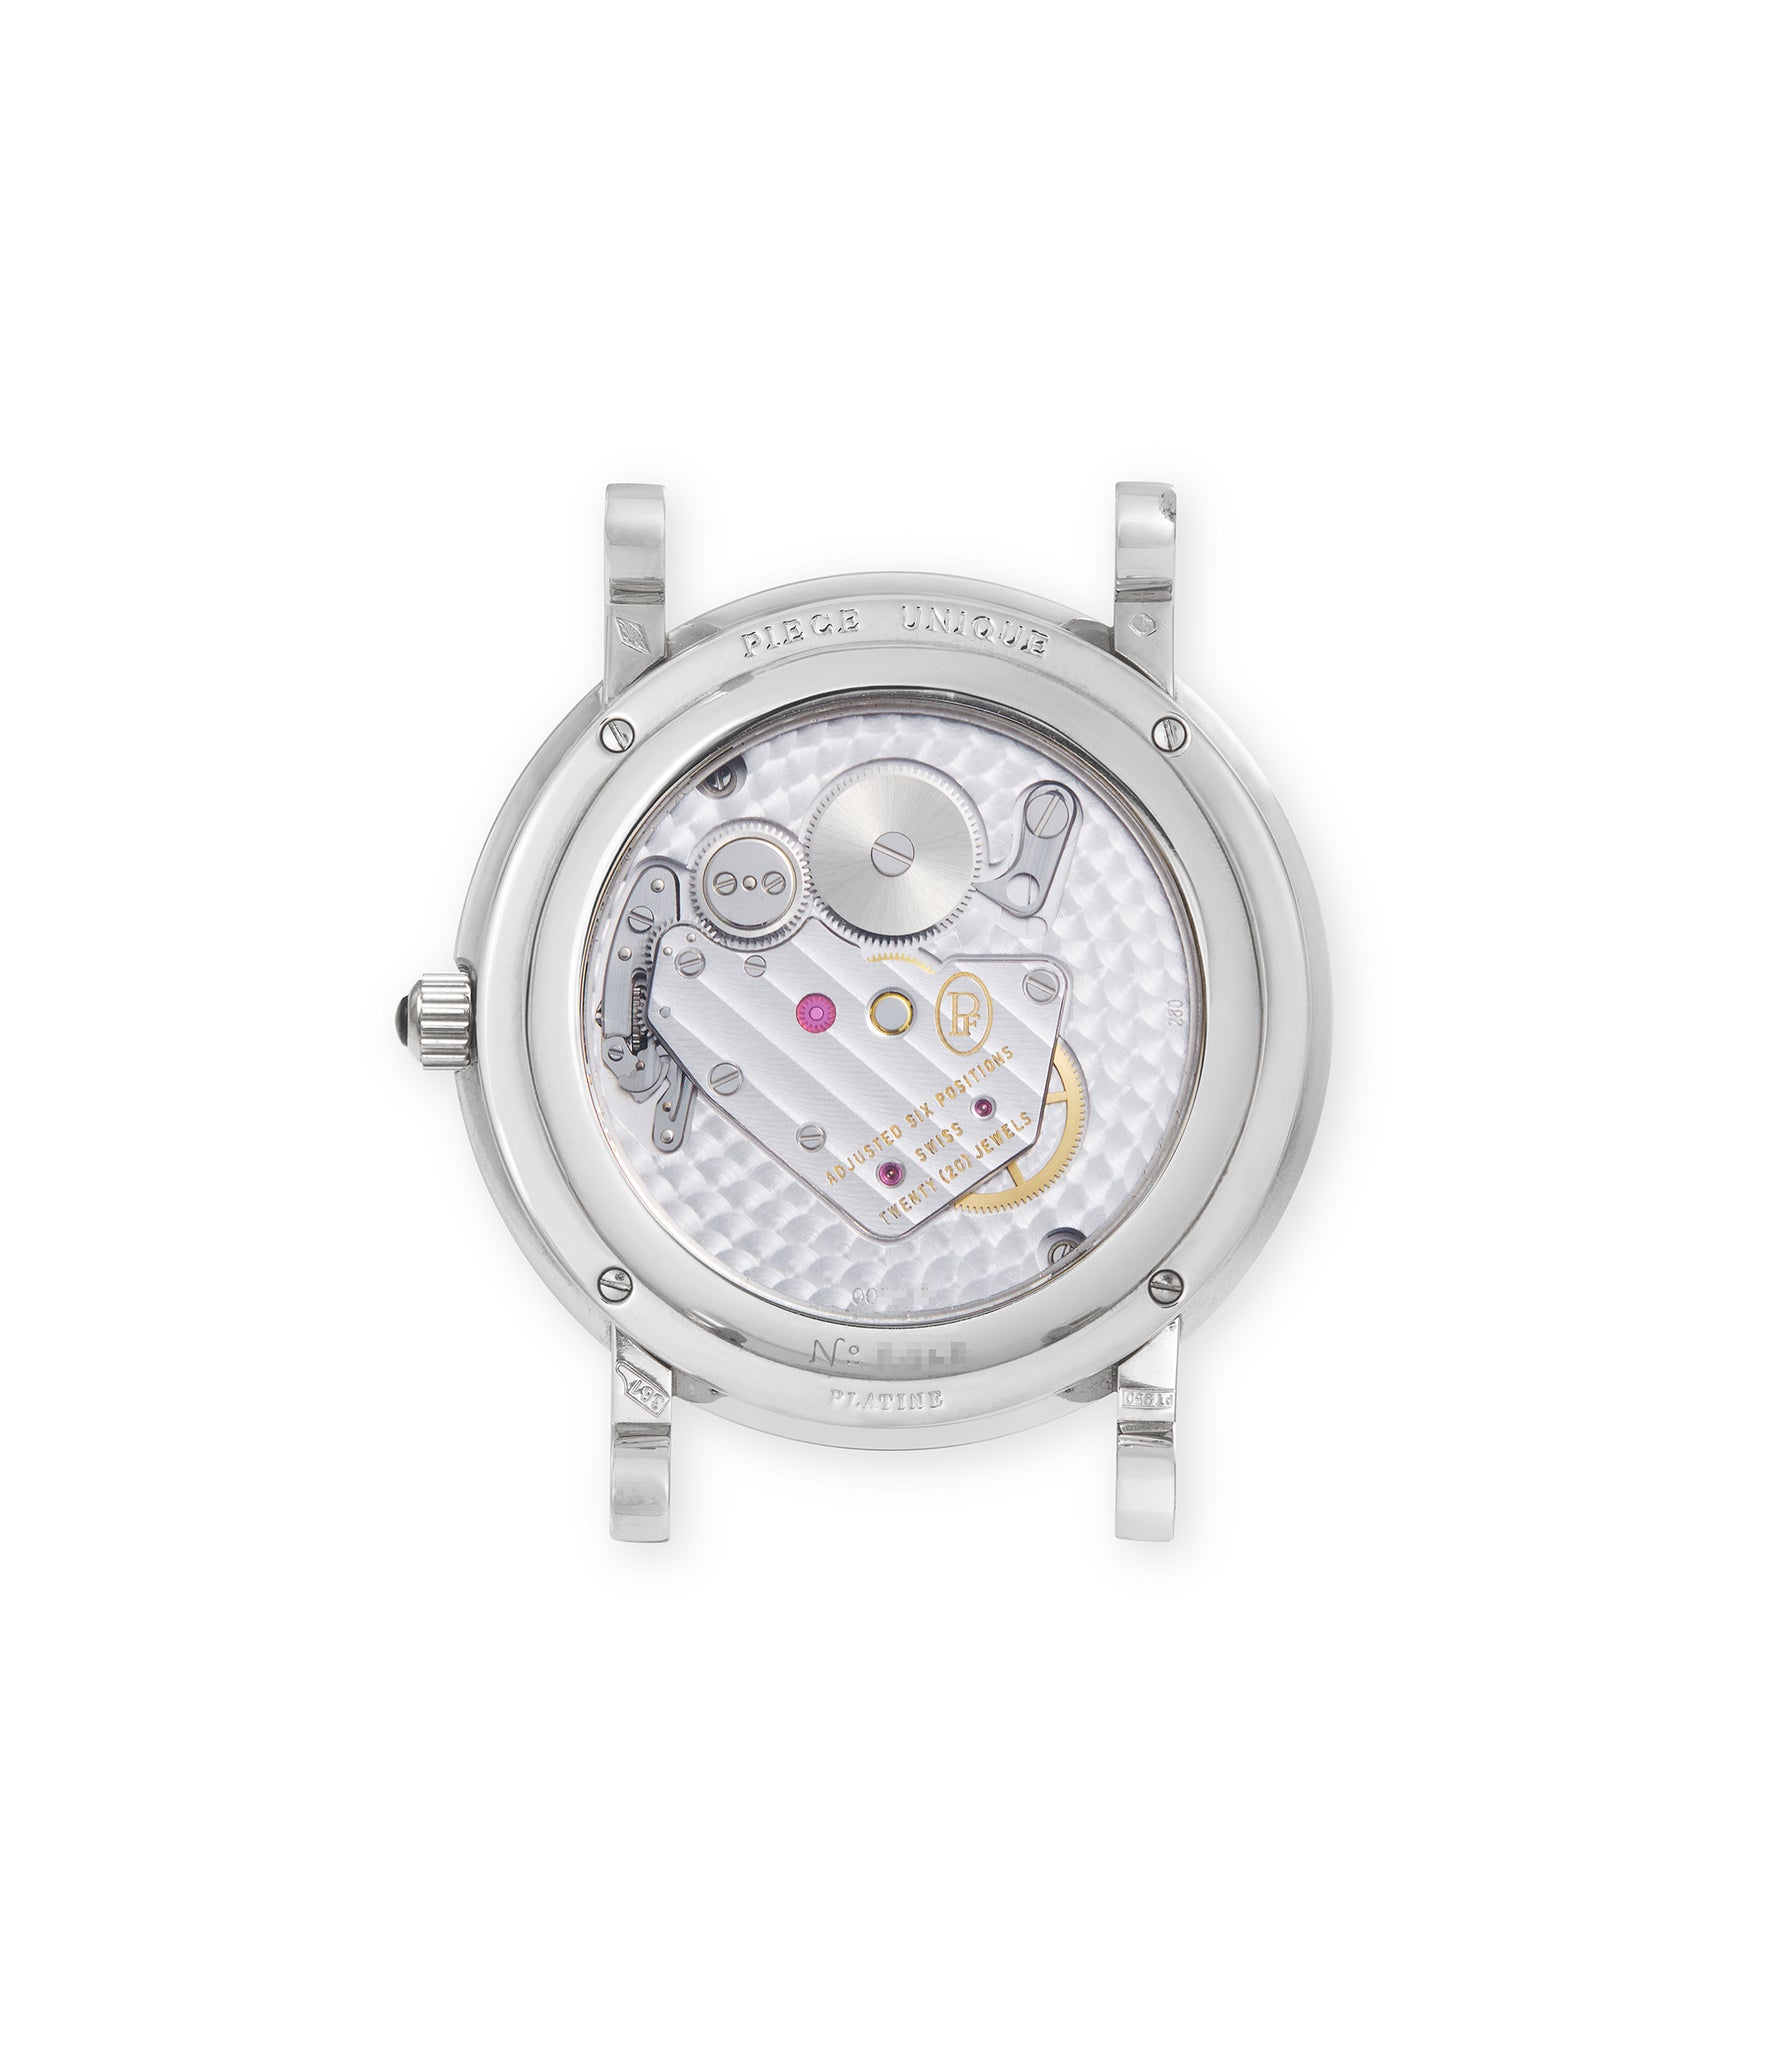 caseback Parmigiani Fleurier Toric Tourbillion Unique Piece PF000487 Platinum preowned watch at A Collected Man London